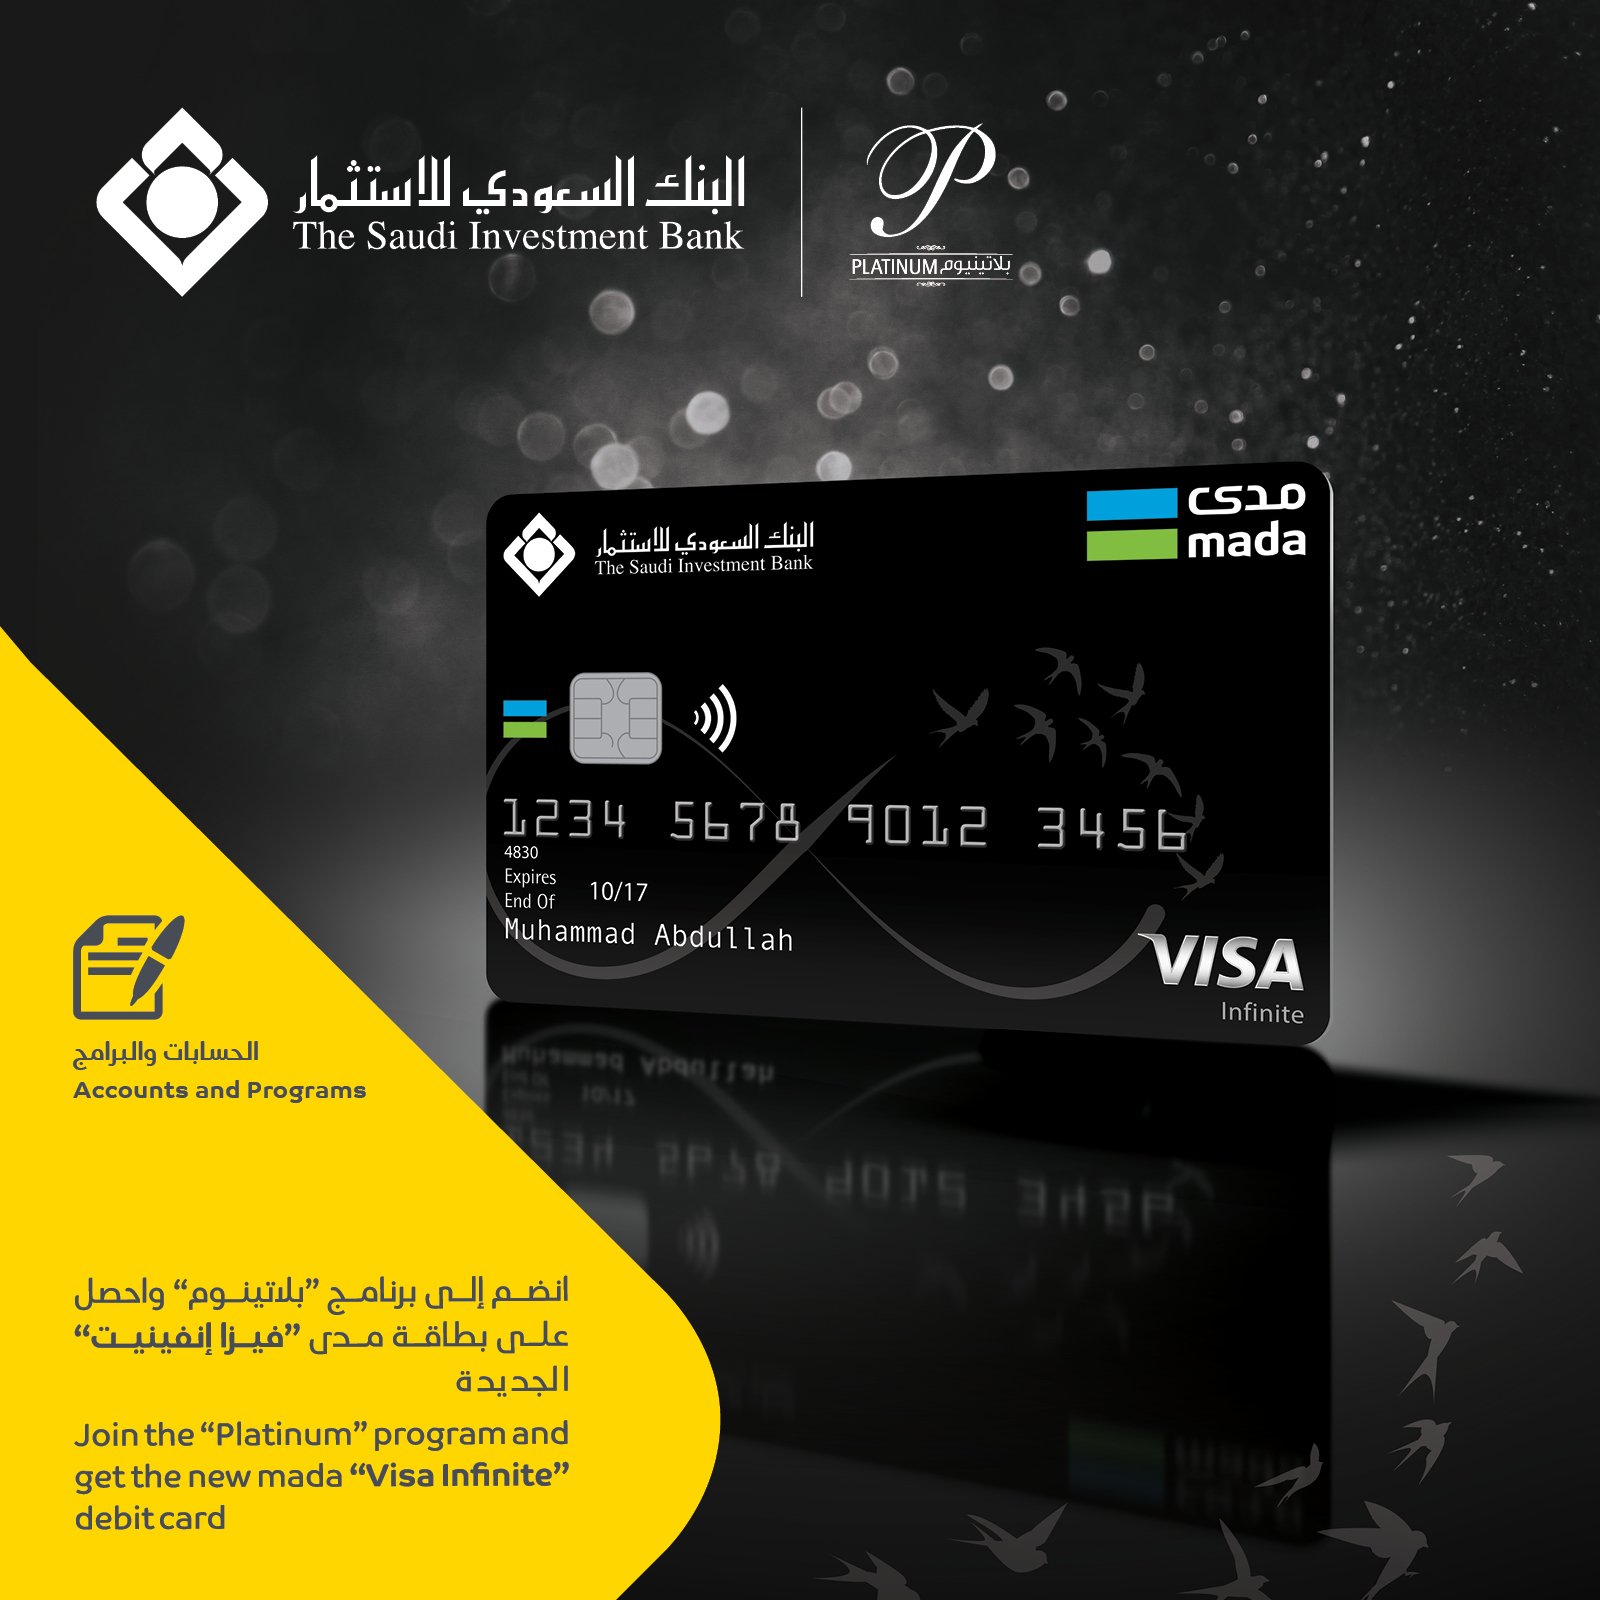 البنك السعودي للاستثمار di Twitter: "انضم الى #برنامج "بلاتينوم" واحصل على  بطاقة #مدى"فيزا إنفينيت" الجديدة https://t.co/6lhuIxwwvg  https://t.co/oSFEaAru97" / Twitter